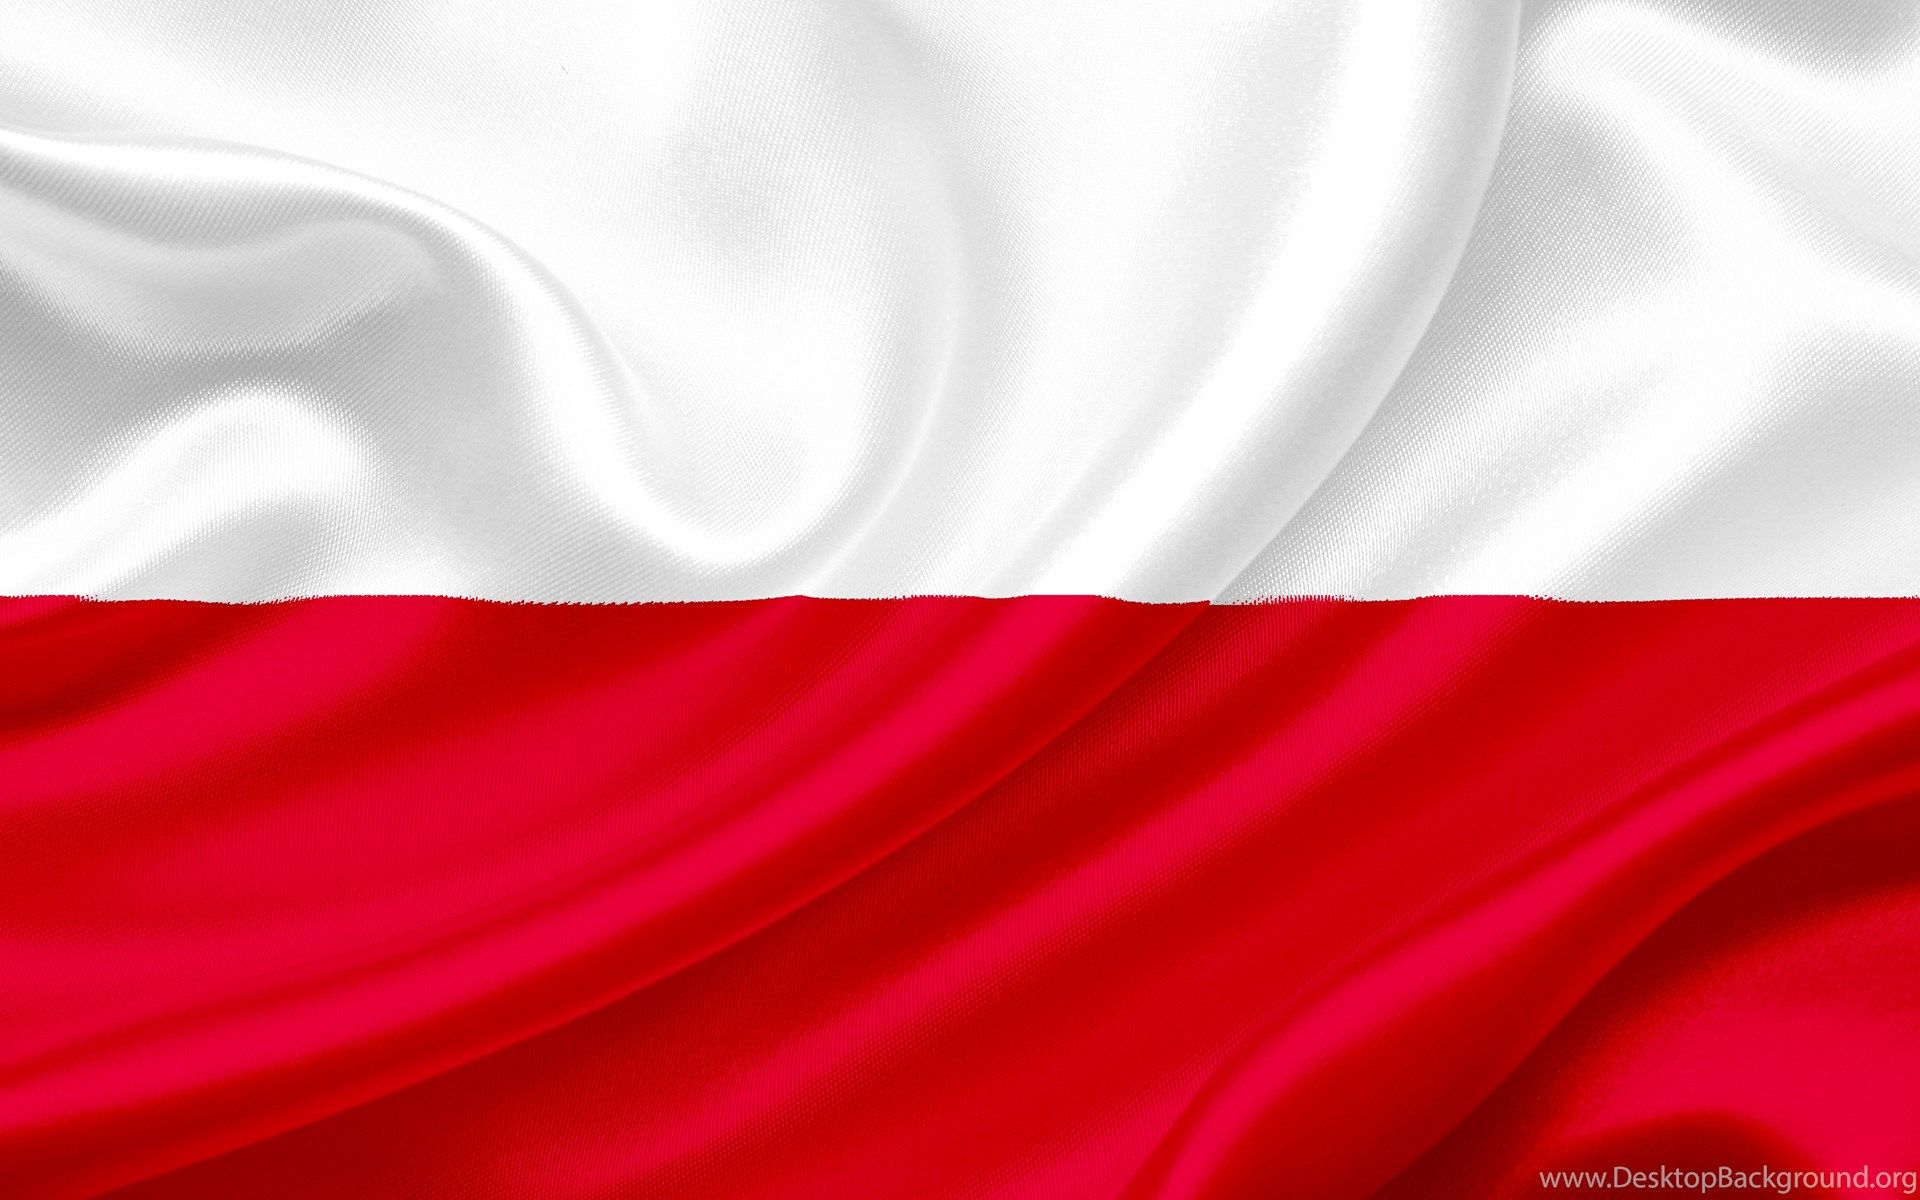 Computer Wallpaper, Desktop Background Poland Flag, 71.17 KB